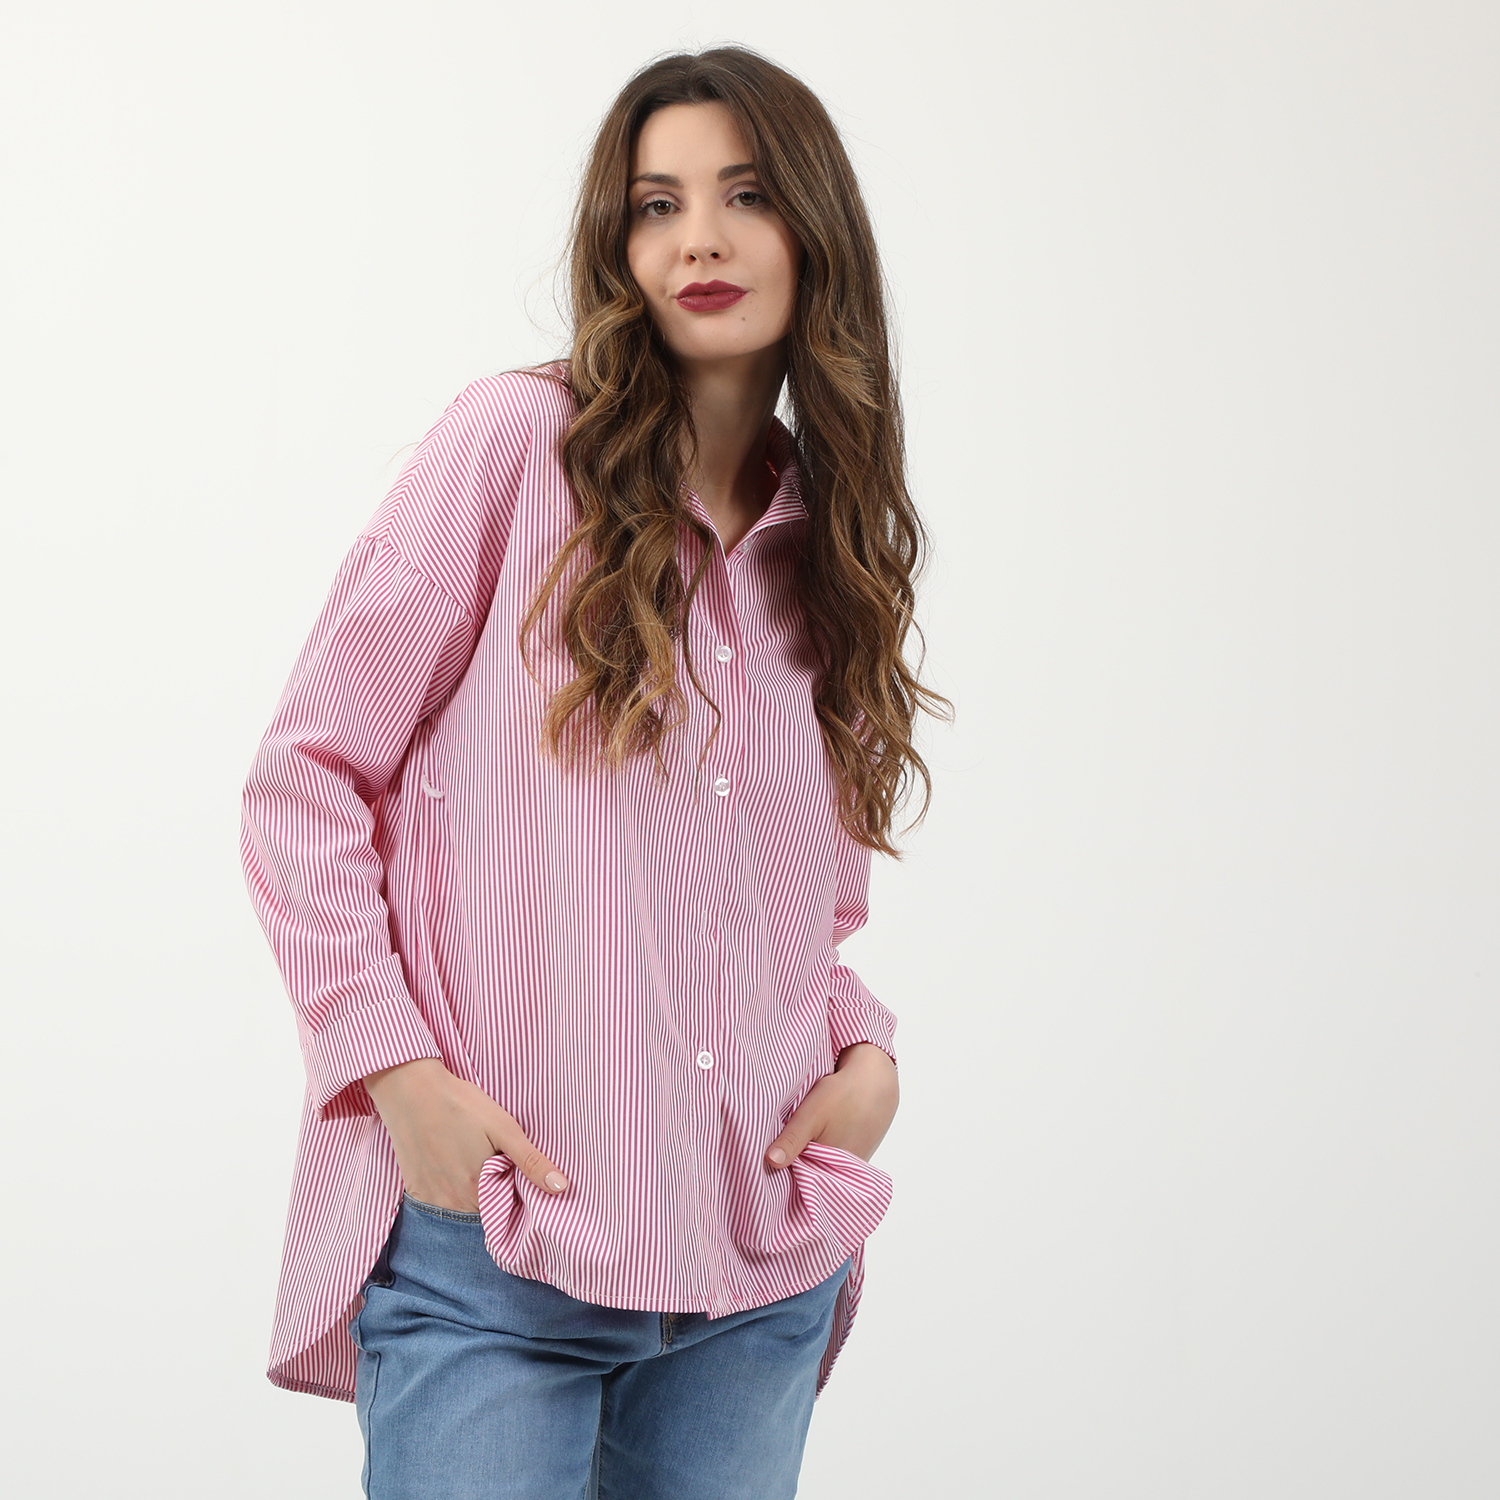 Γυναικεία/Ρούχα/Πουκάμισα/Μακρυμάνικα ATTRATTIVO - Γυναικείο μακρύ πουκάμισο ATTRATTIVO ριγέ ροζ λευκό